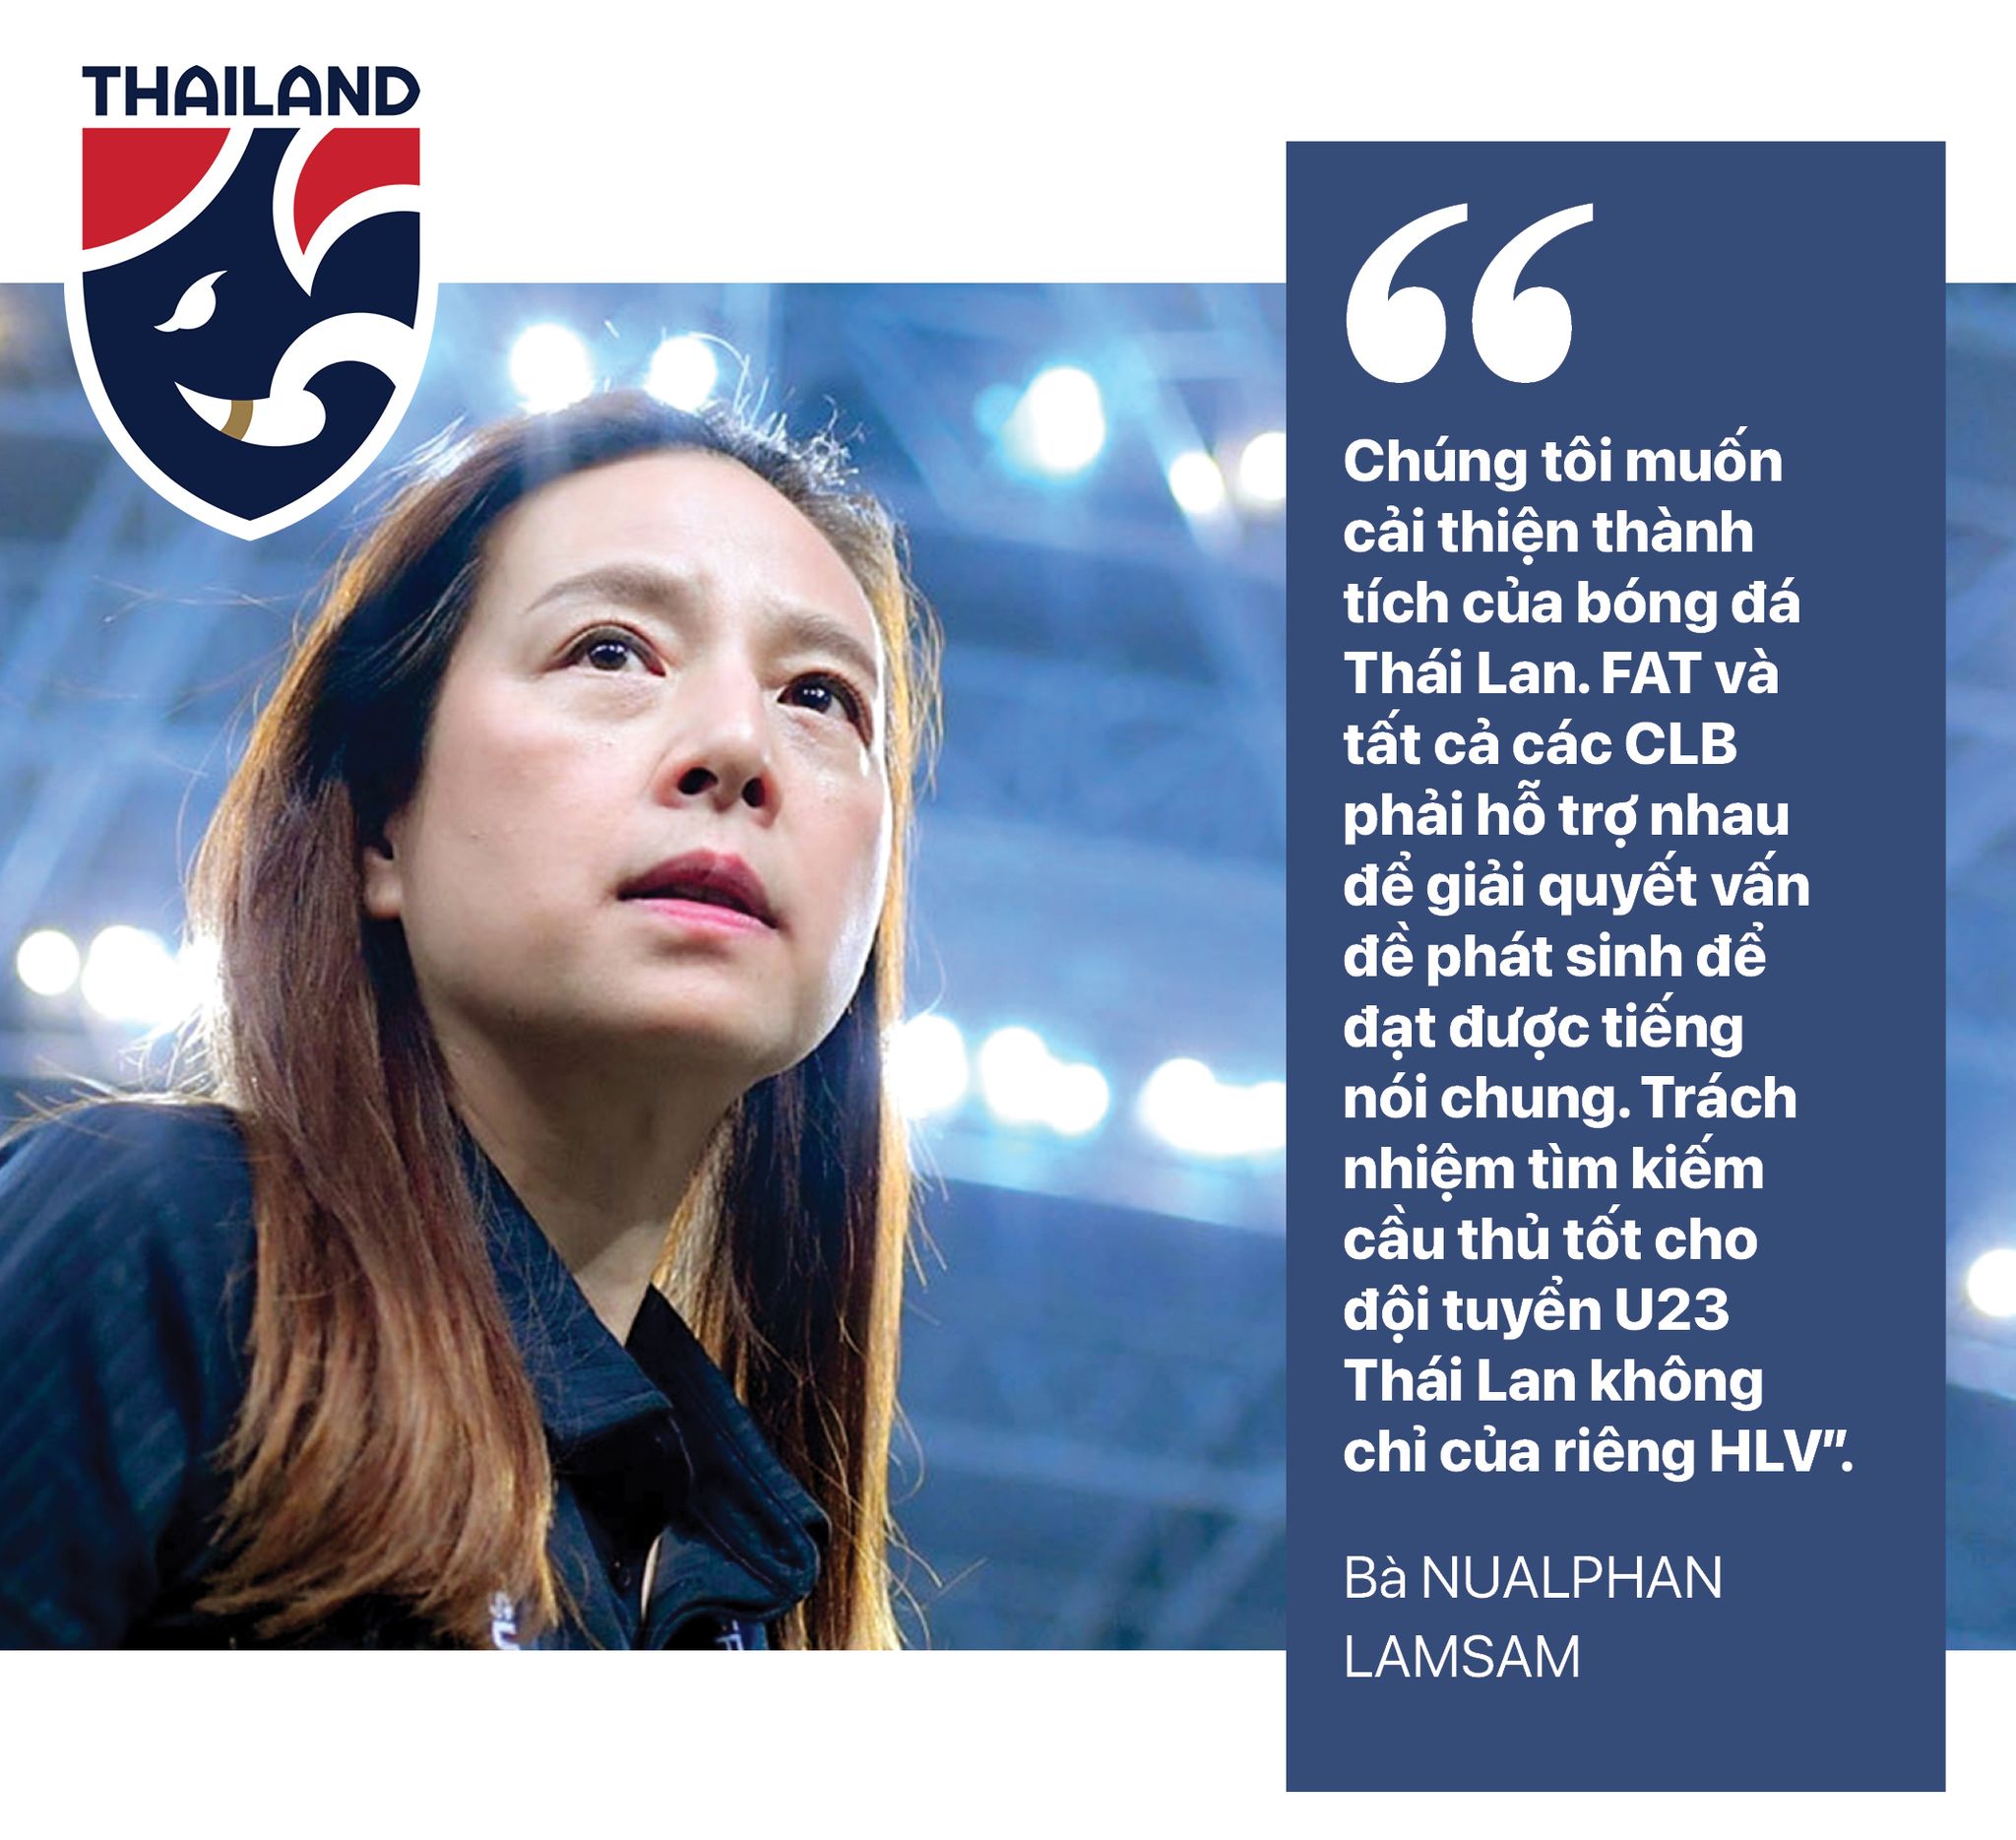 東南亞足球渴望在第 31 屆東南亞運動會上獲得金牌 - 照片 4。